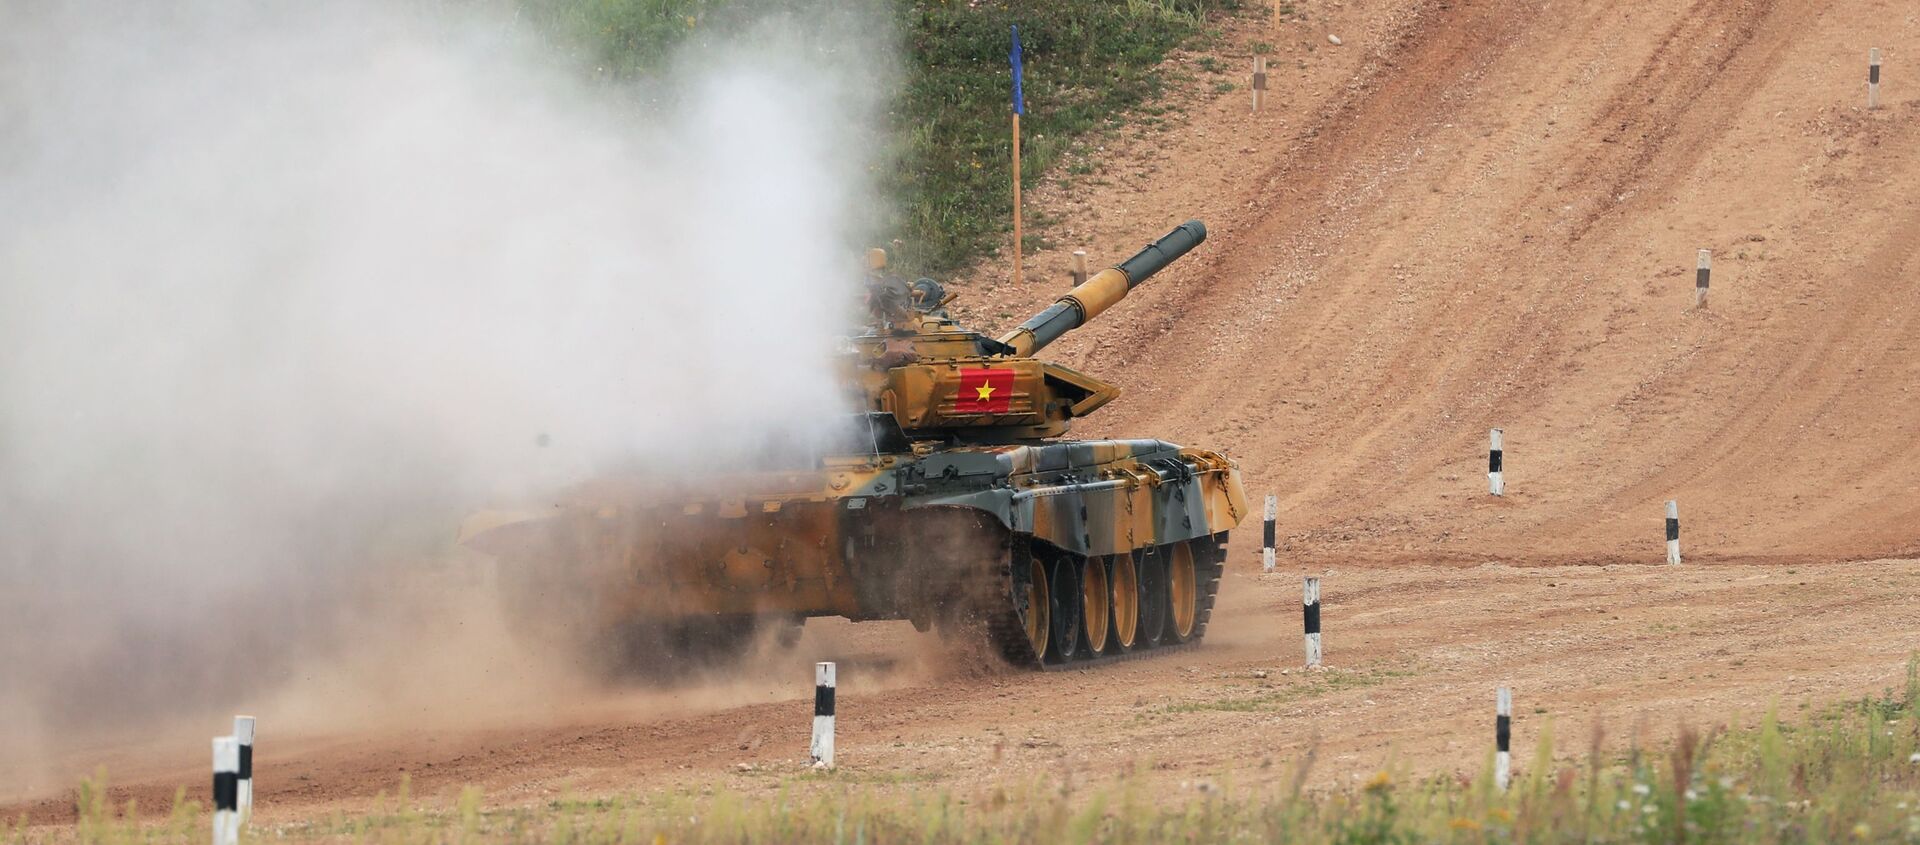  Xe tăng T-72 của đội tuyển Việt Nam tại buổi thi đấu của các kíp xe tăng trong khuôn khổ cuộc thi Tank Biathlon 2020 tại bãi tập Alabino.   - Sputnik Việt Nam, 1920, 15.07.2021